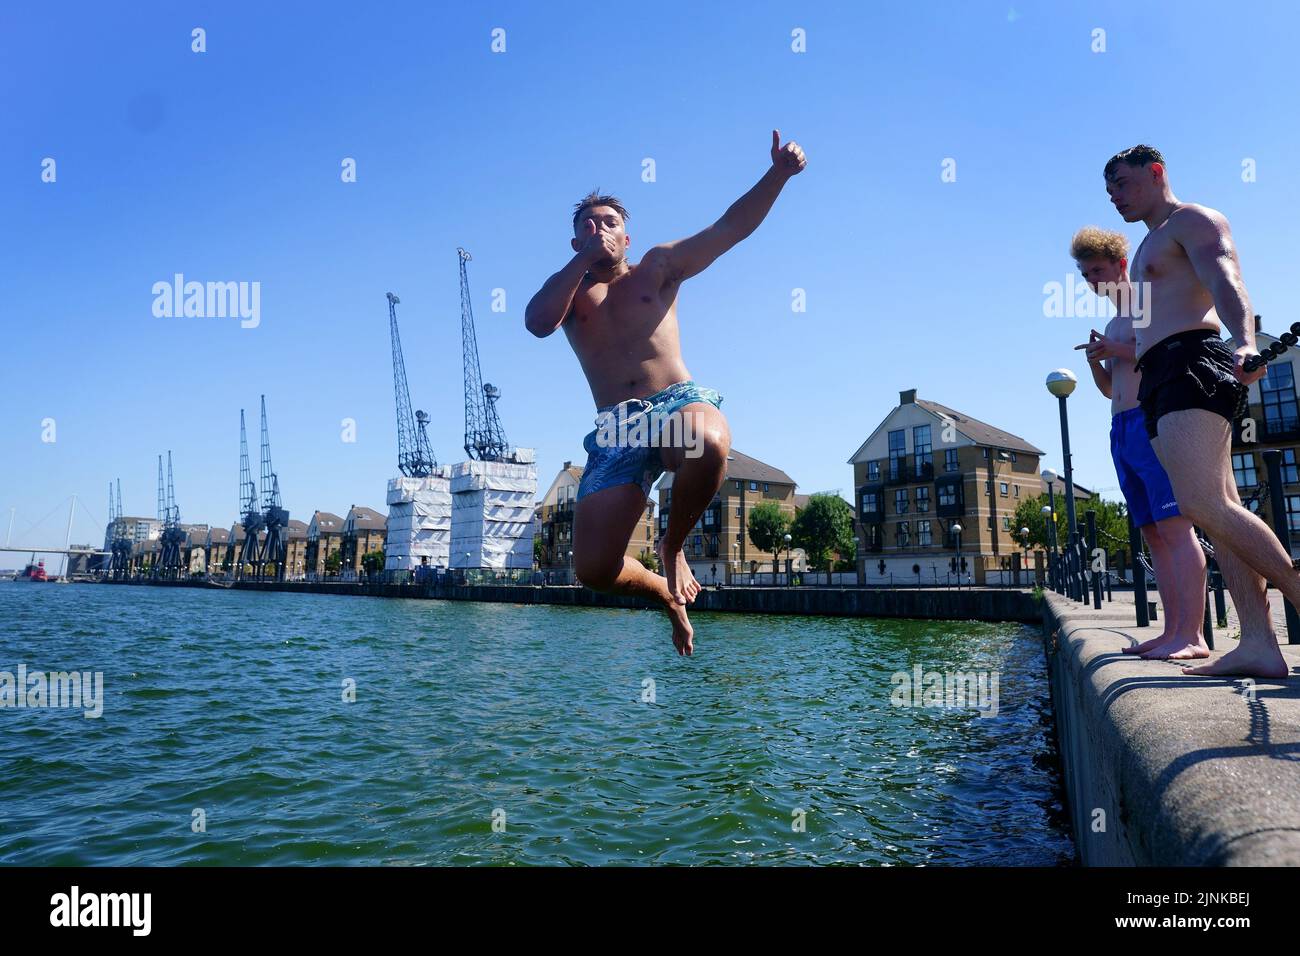 Ein junger Mann posiert, als er in das Royal Victoria Dock im Osten Londons springt. Für einige Teile Englands wird am Freitag eine Dürre ausgerufen, wobei die Temperaturen bis 35C Grad erreichen werden, was das Land heißer macht als Teile der Karibik. Bilddatum: Freitag, 12. August 2022. Stockfoto